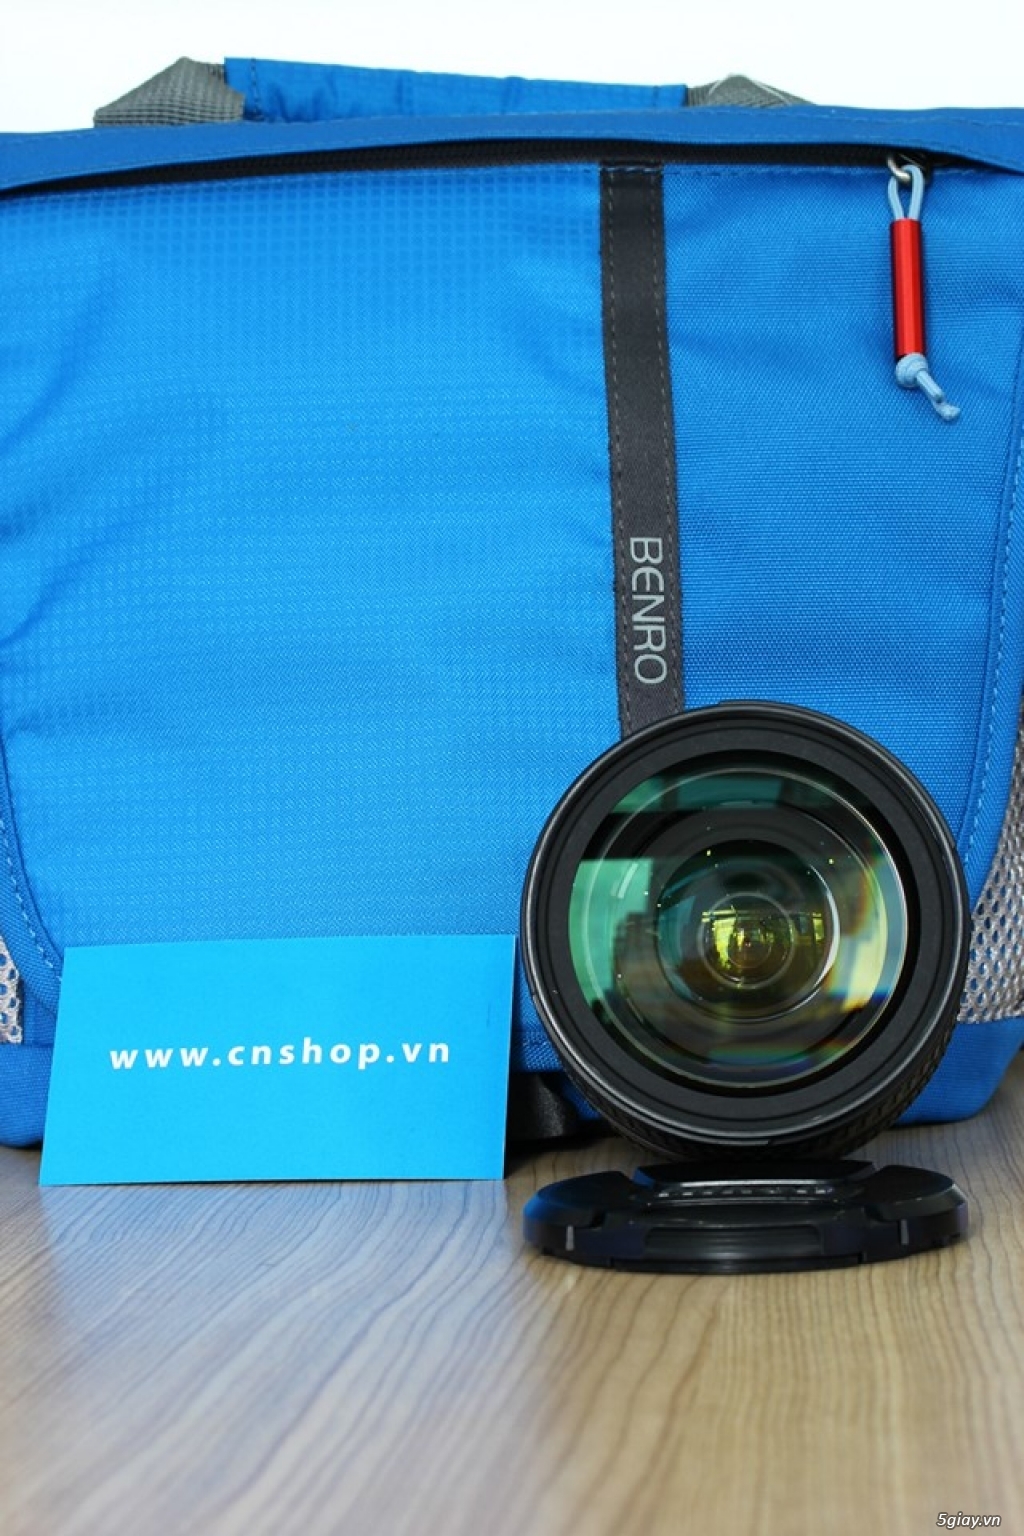 Cần bán Nikon AF-S 24-85mm f/3.5-4.5G ED VR tại cnshop.vn - 1